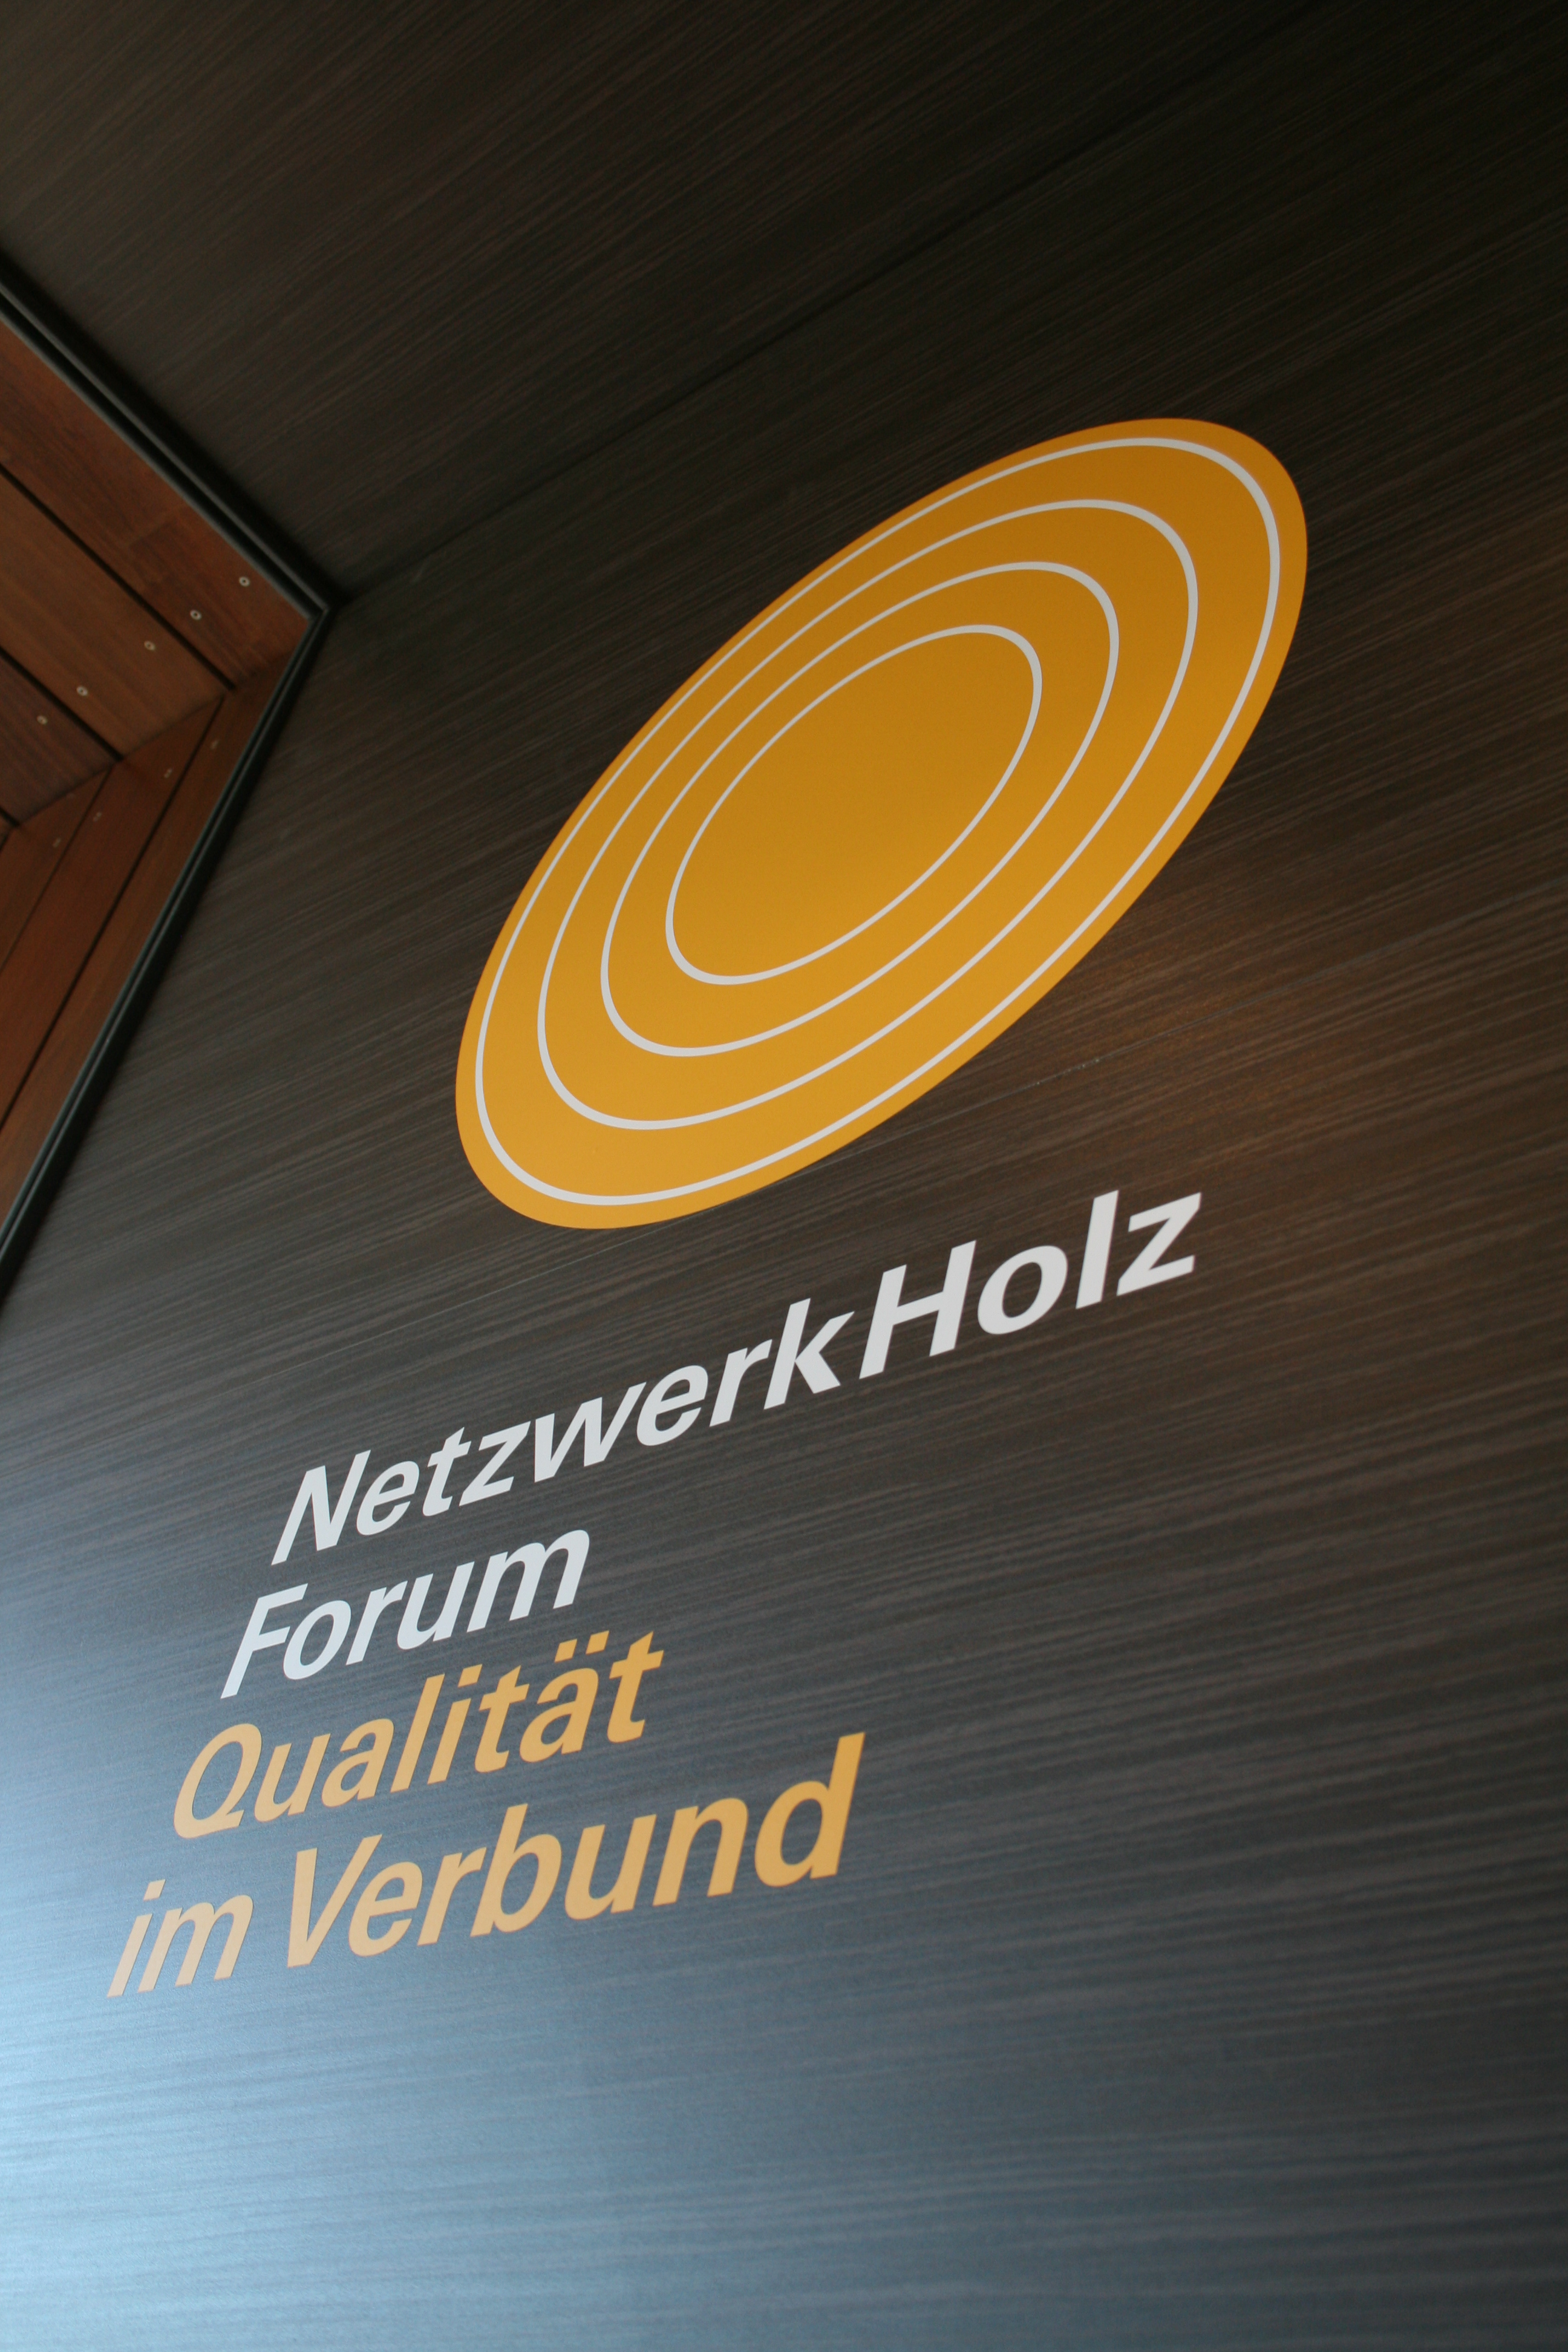 NetzwerkHolz Forum in Hamburg eröffnet